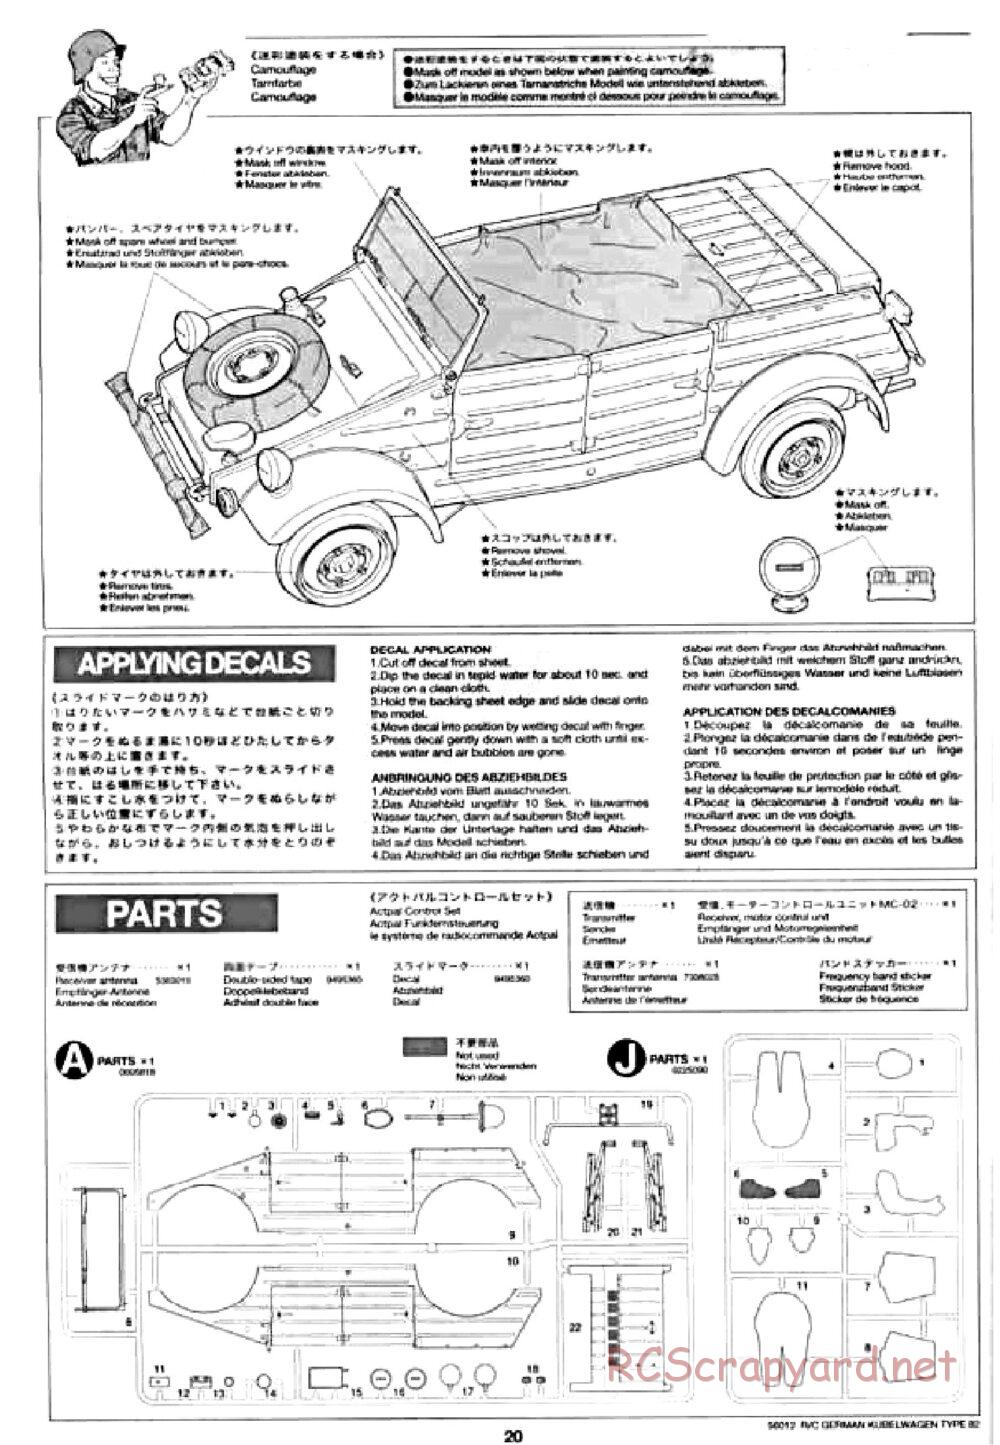 Tamiya - Kubelwagen Type 82 Chassis - Manual - Page 20